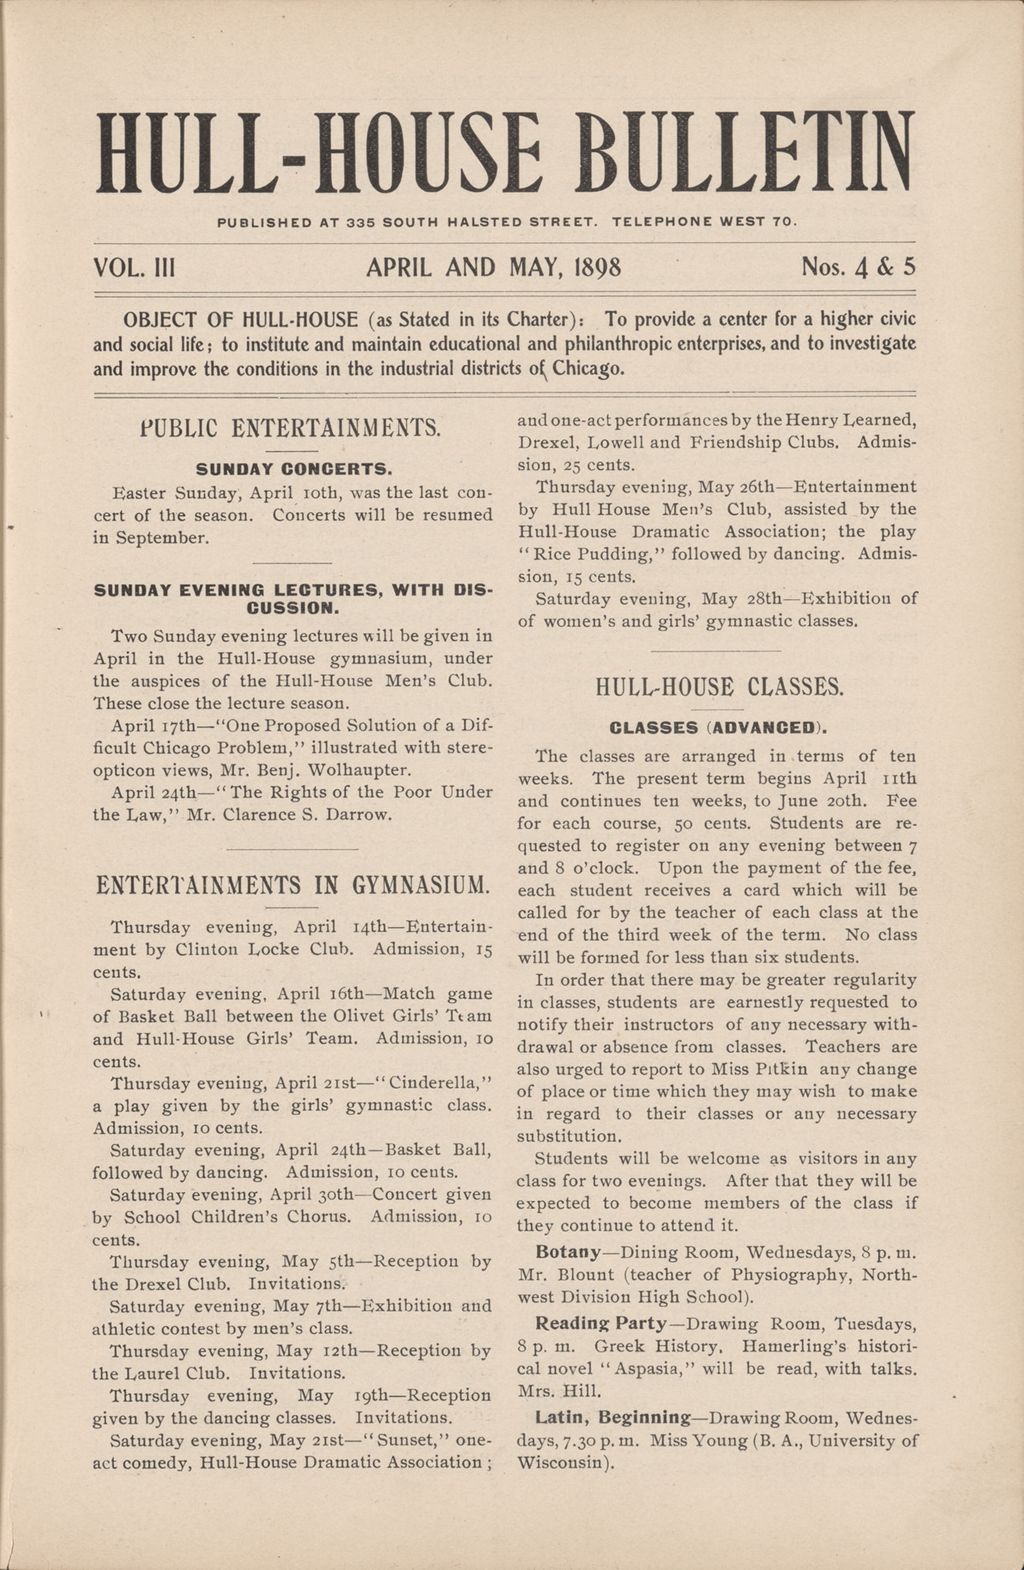 Hull-House Bulletin, vol. 3, no. 4-5, 1898: Apr.-May